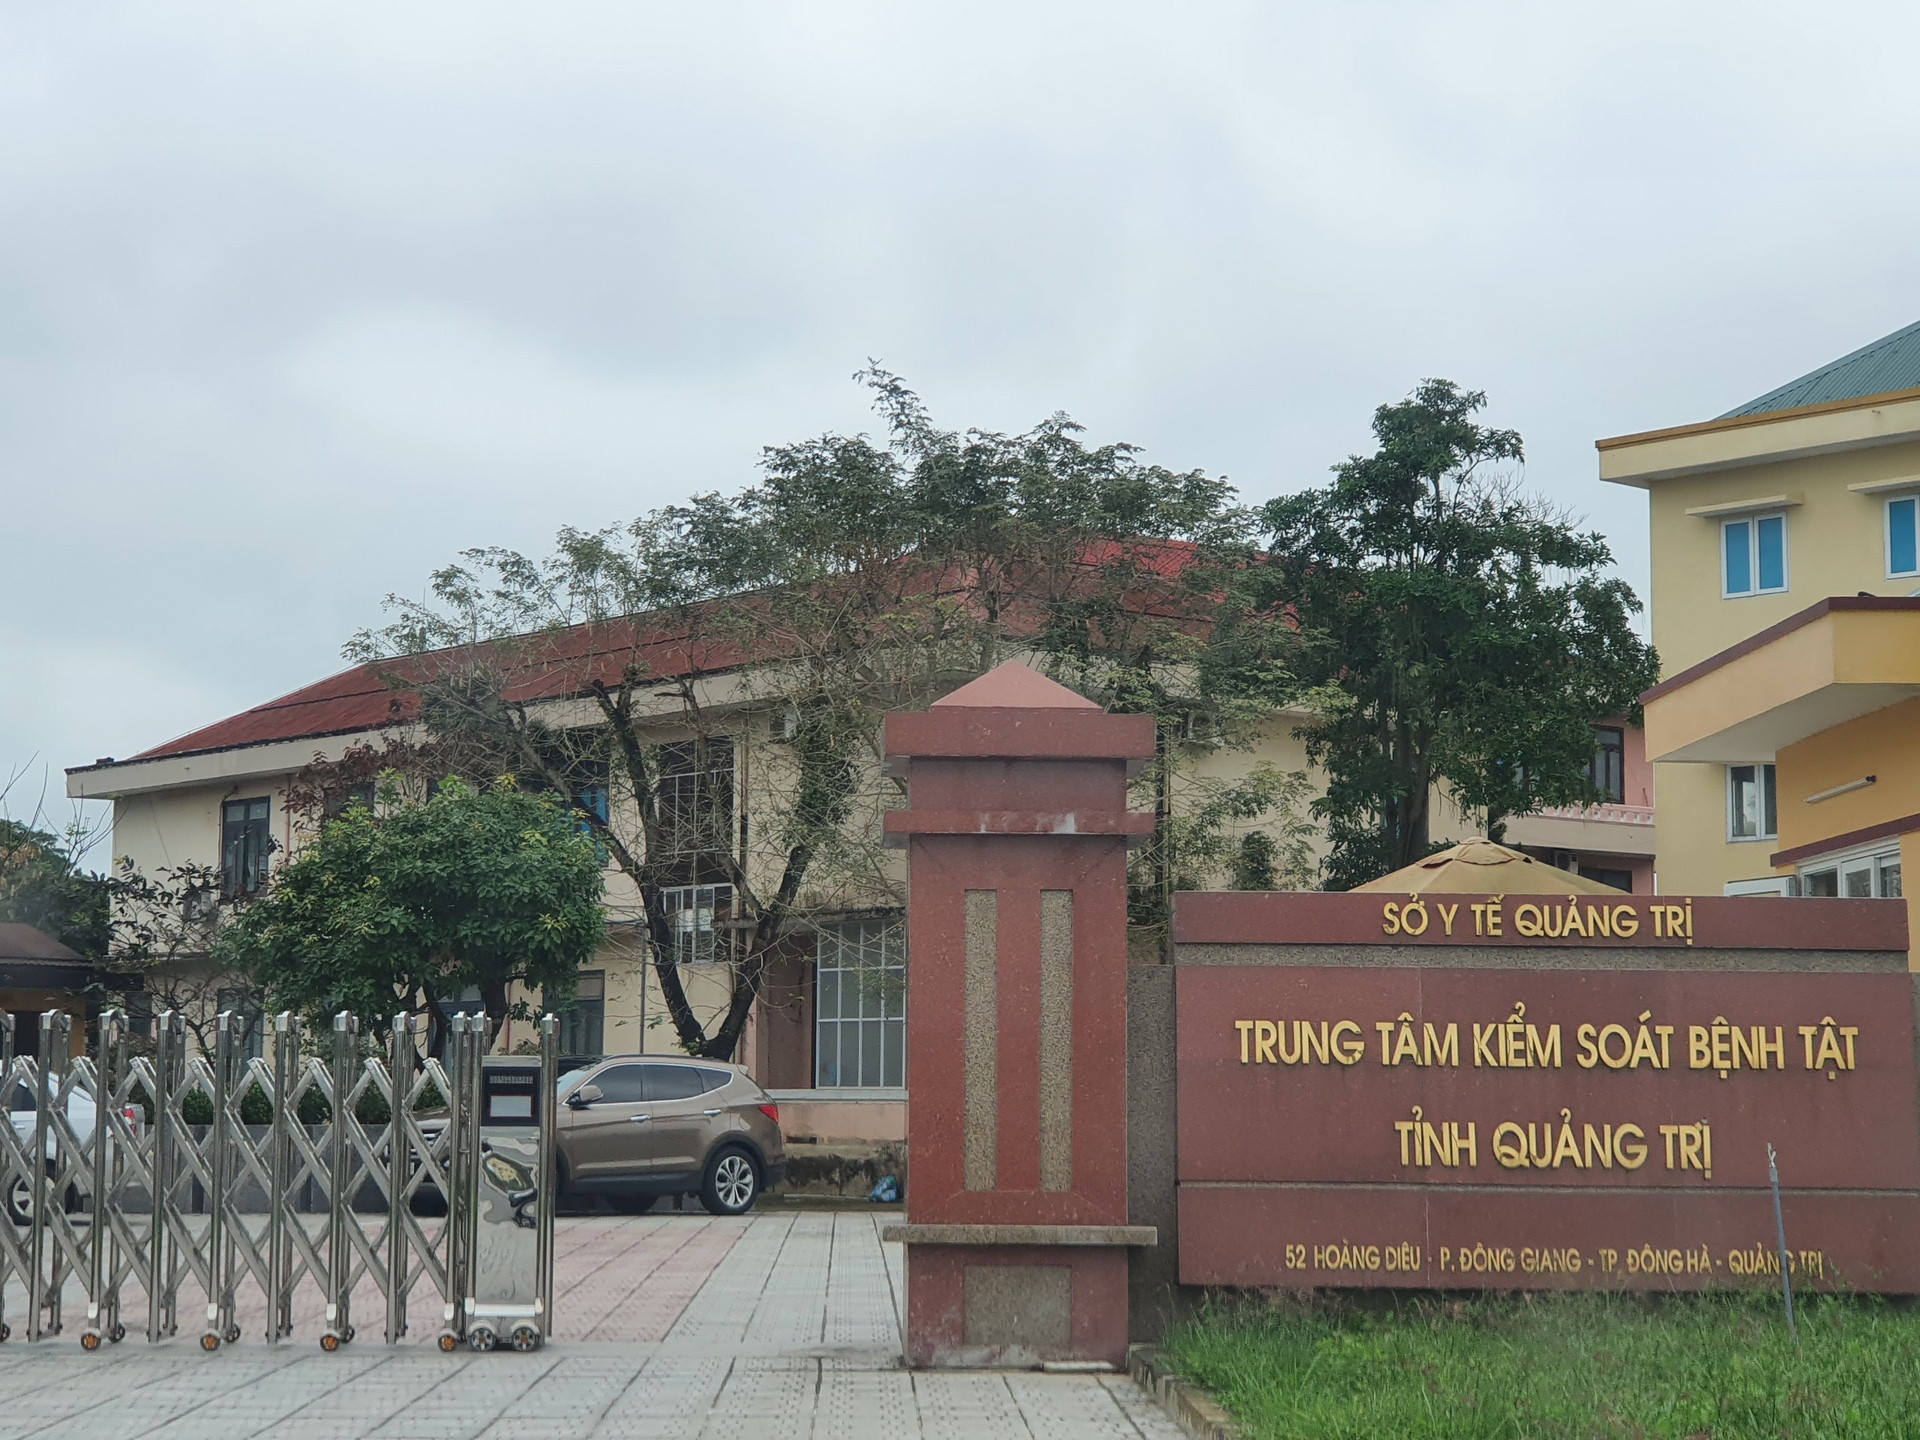 Dự kiến đầu tuần tới sẽ có Kết luận thanh tra việc mua sắm trang thiết bị y tế, kit xét nghiệm Covid-19 tại tỉnh Quảng Trị.